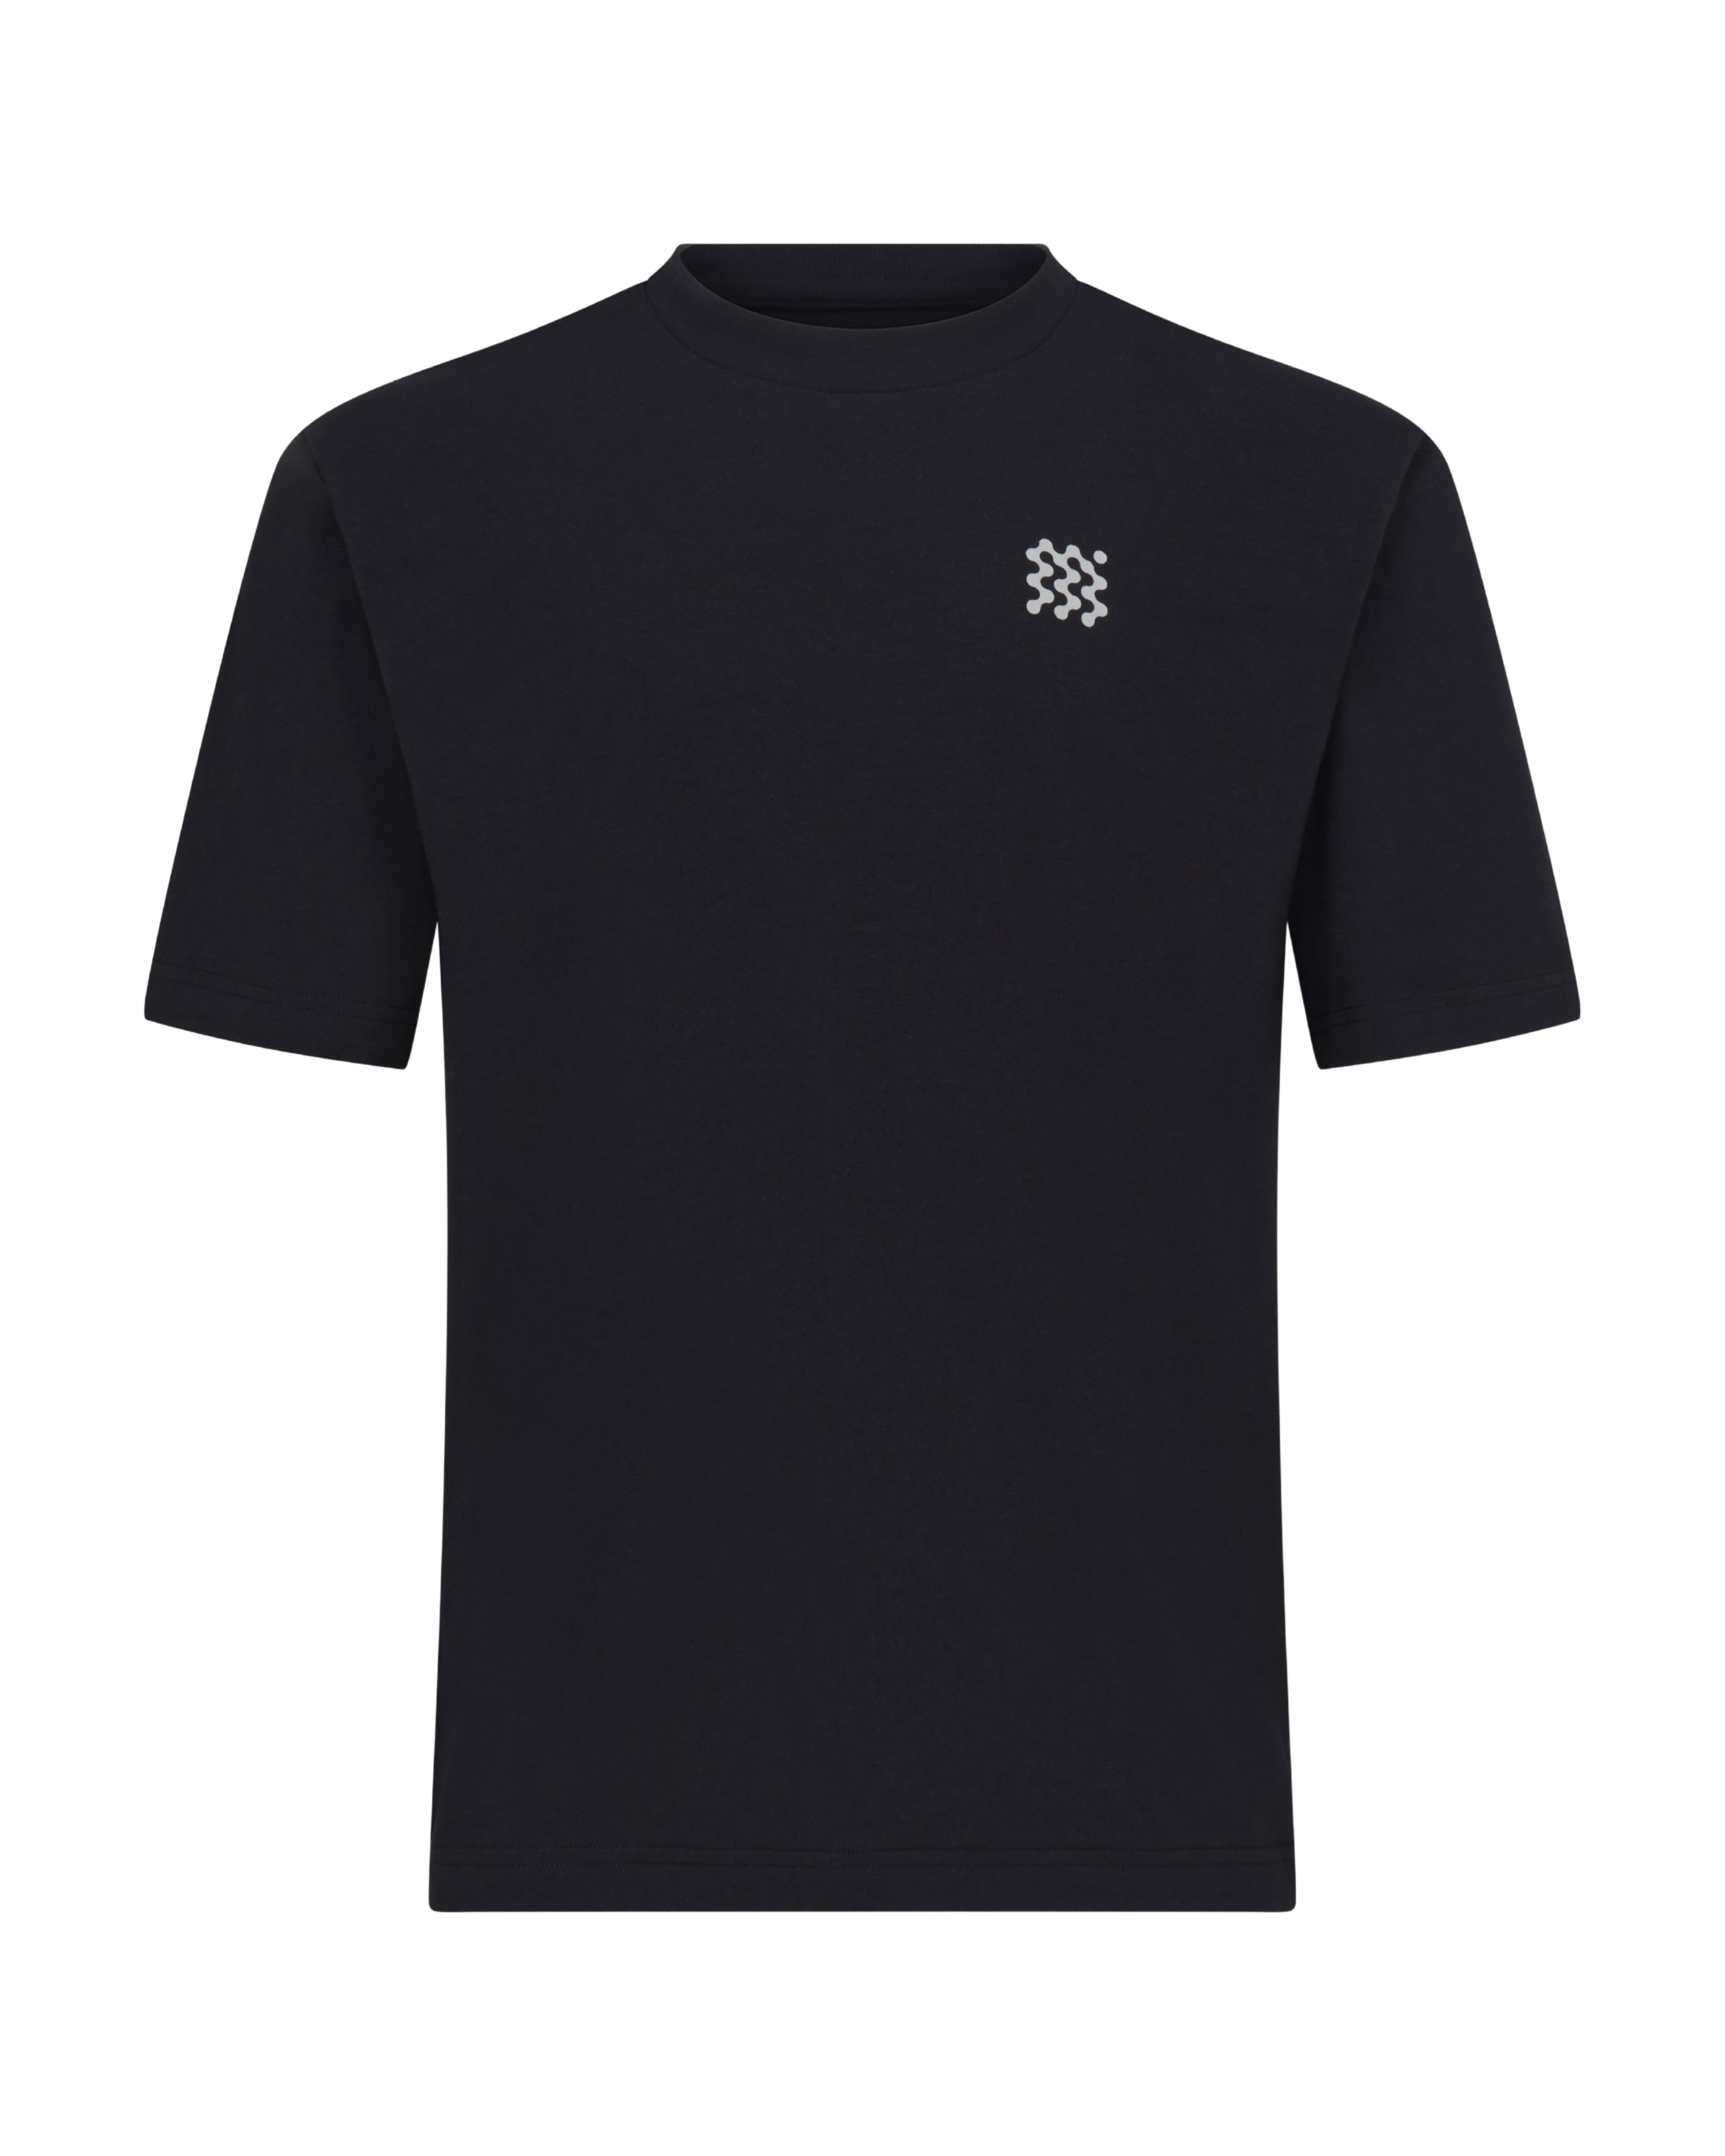 MANORS Men's MGA T-Shirt | golf and sports fashion brands at agorabkk 